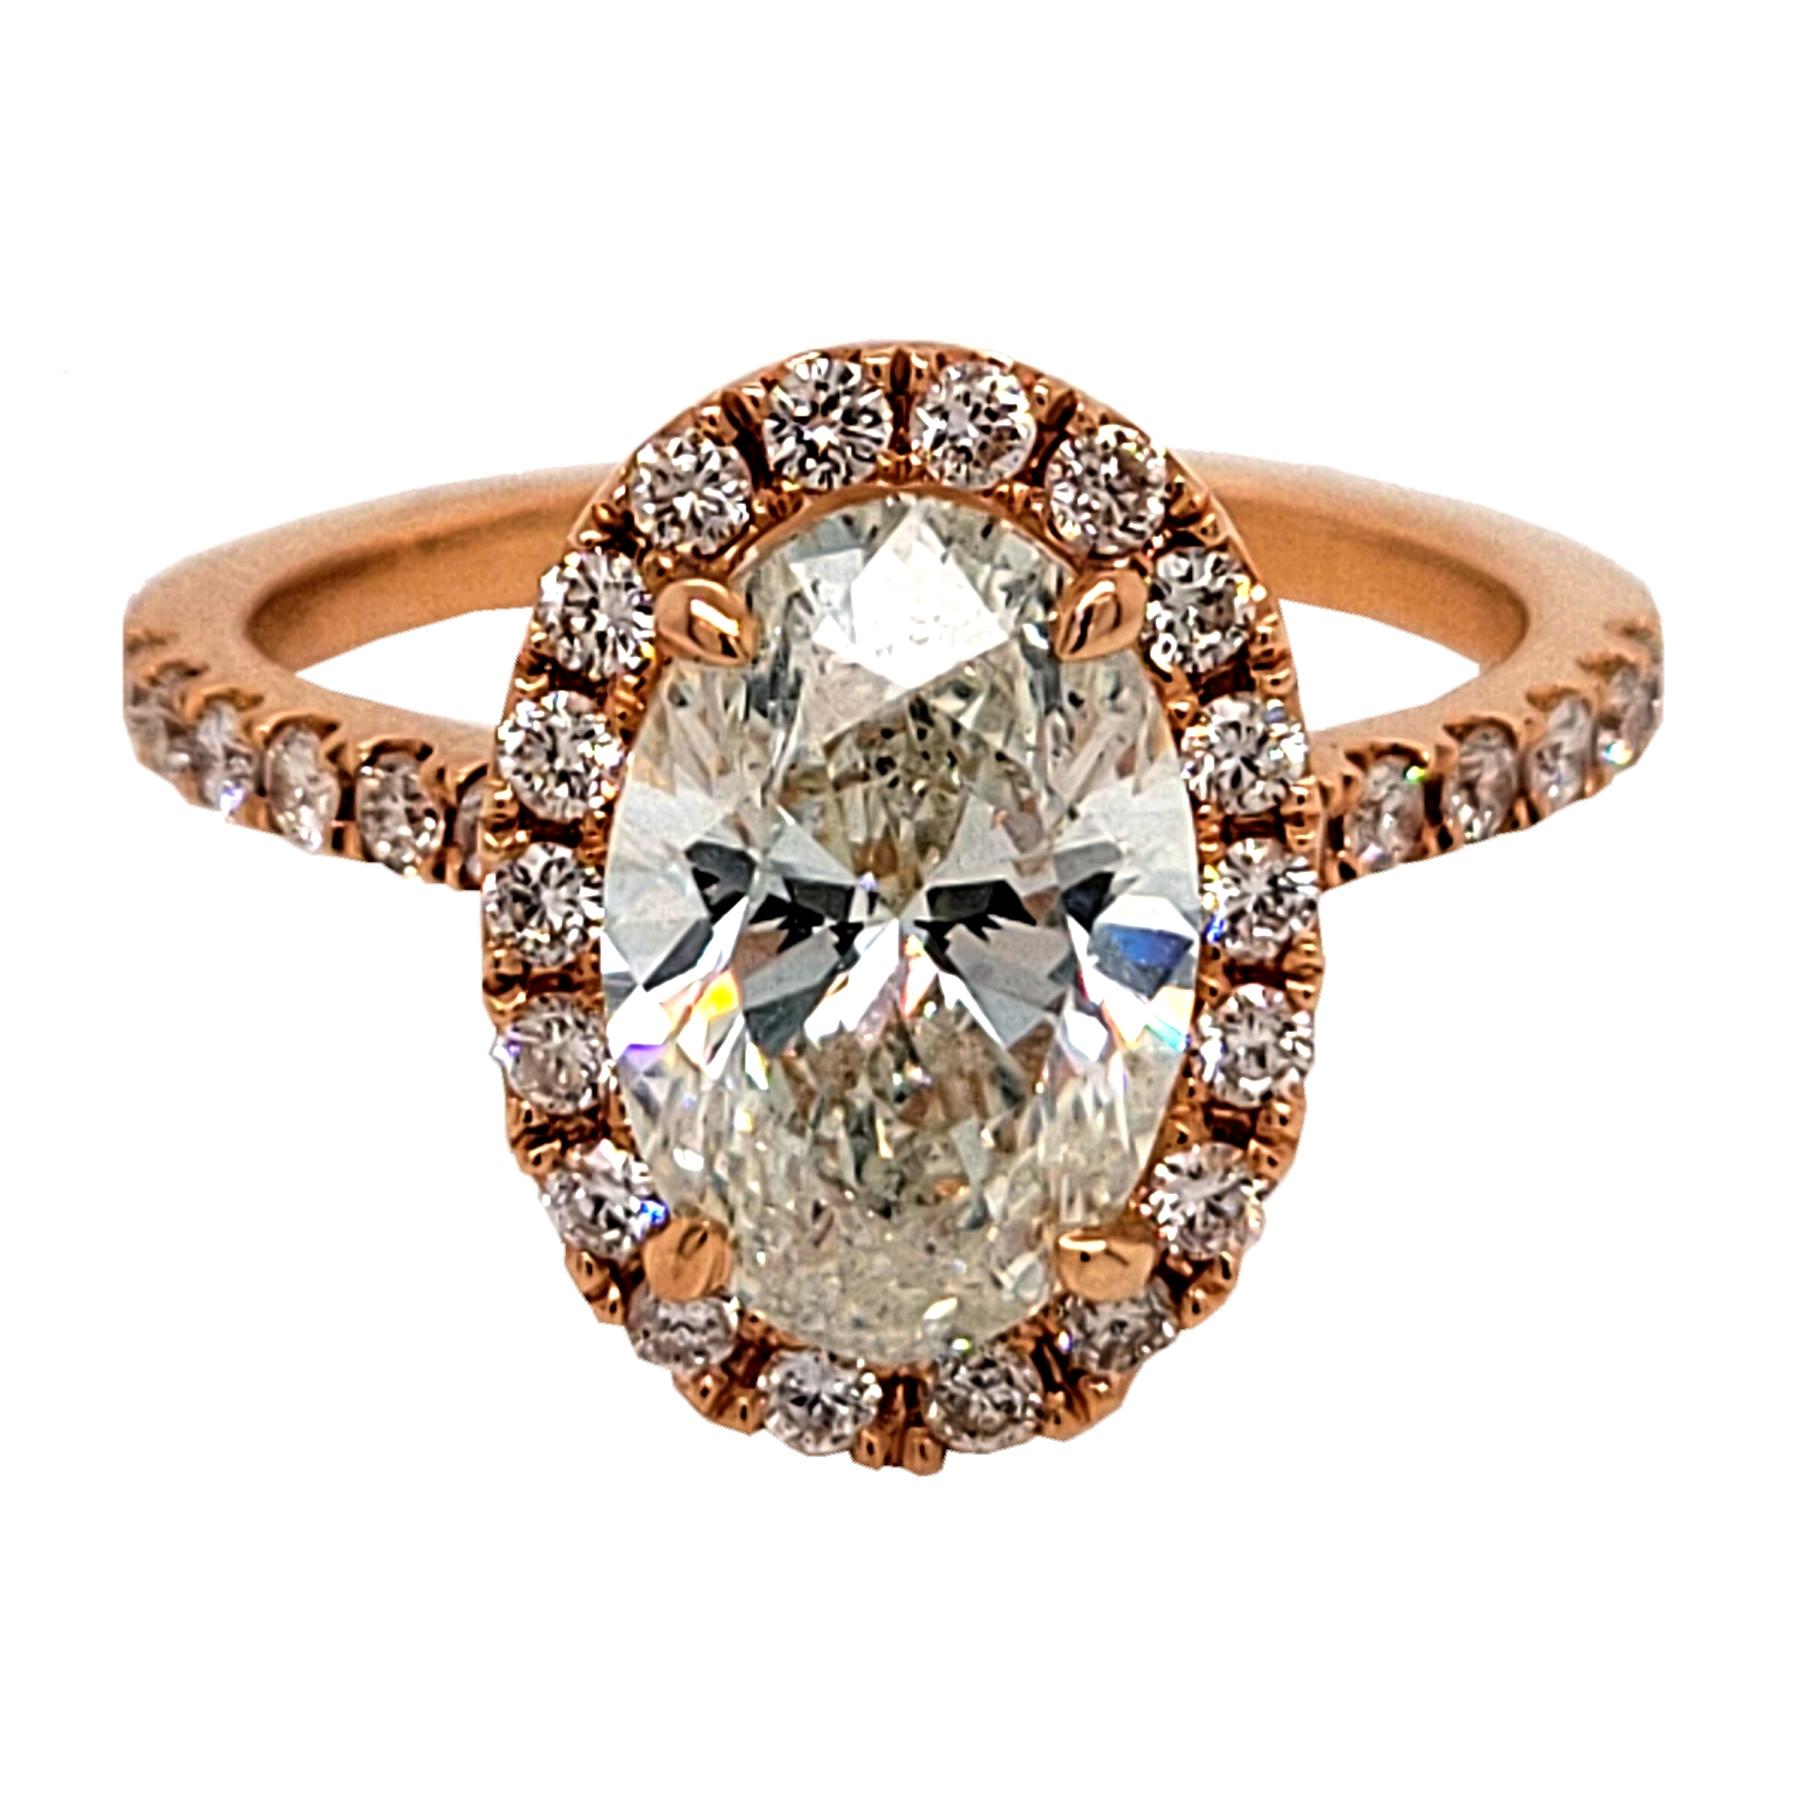 Très beau diamant central de forme ovale J/SI1 certifié EGL serti dans une bague de fiançailles en or 18k serti pave avec un halo et un poids total de 0.58 ct de diamants sur le côté. 

Caractéristiques du diamant :
Pierre centrale : 2.20 Ct EGL